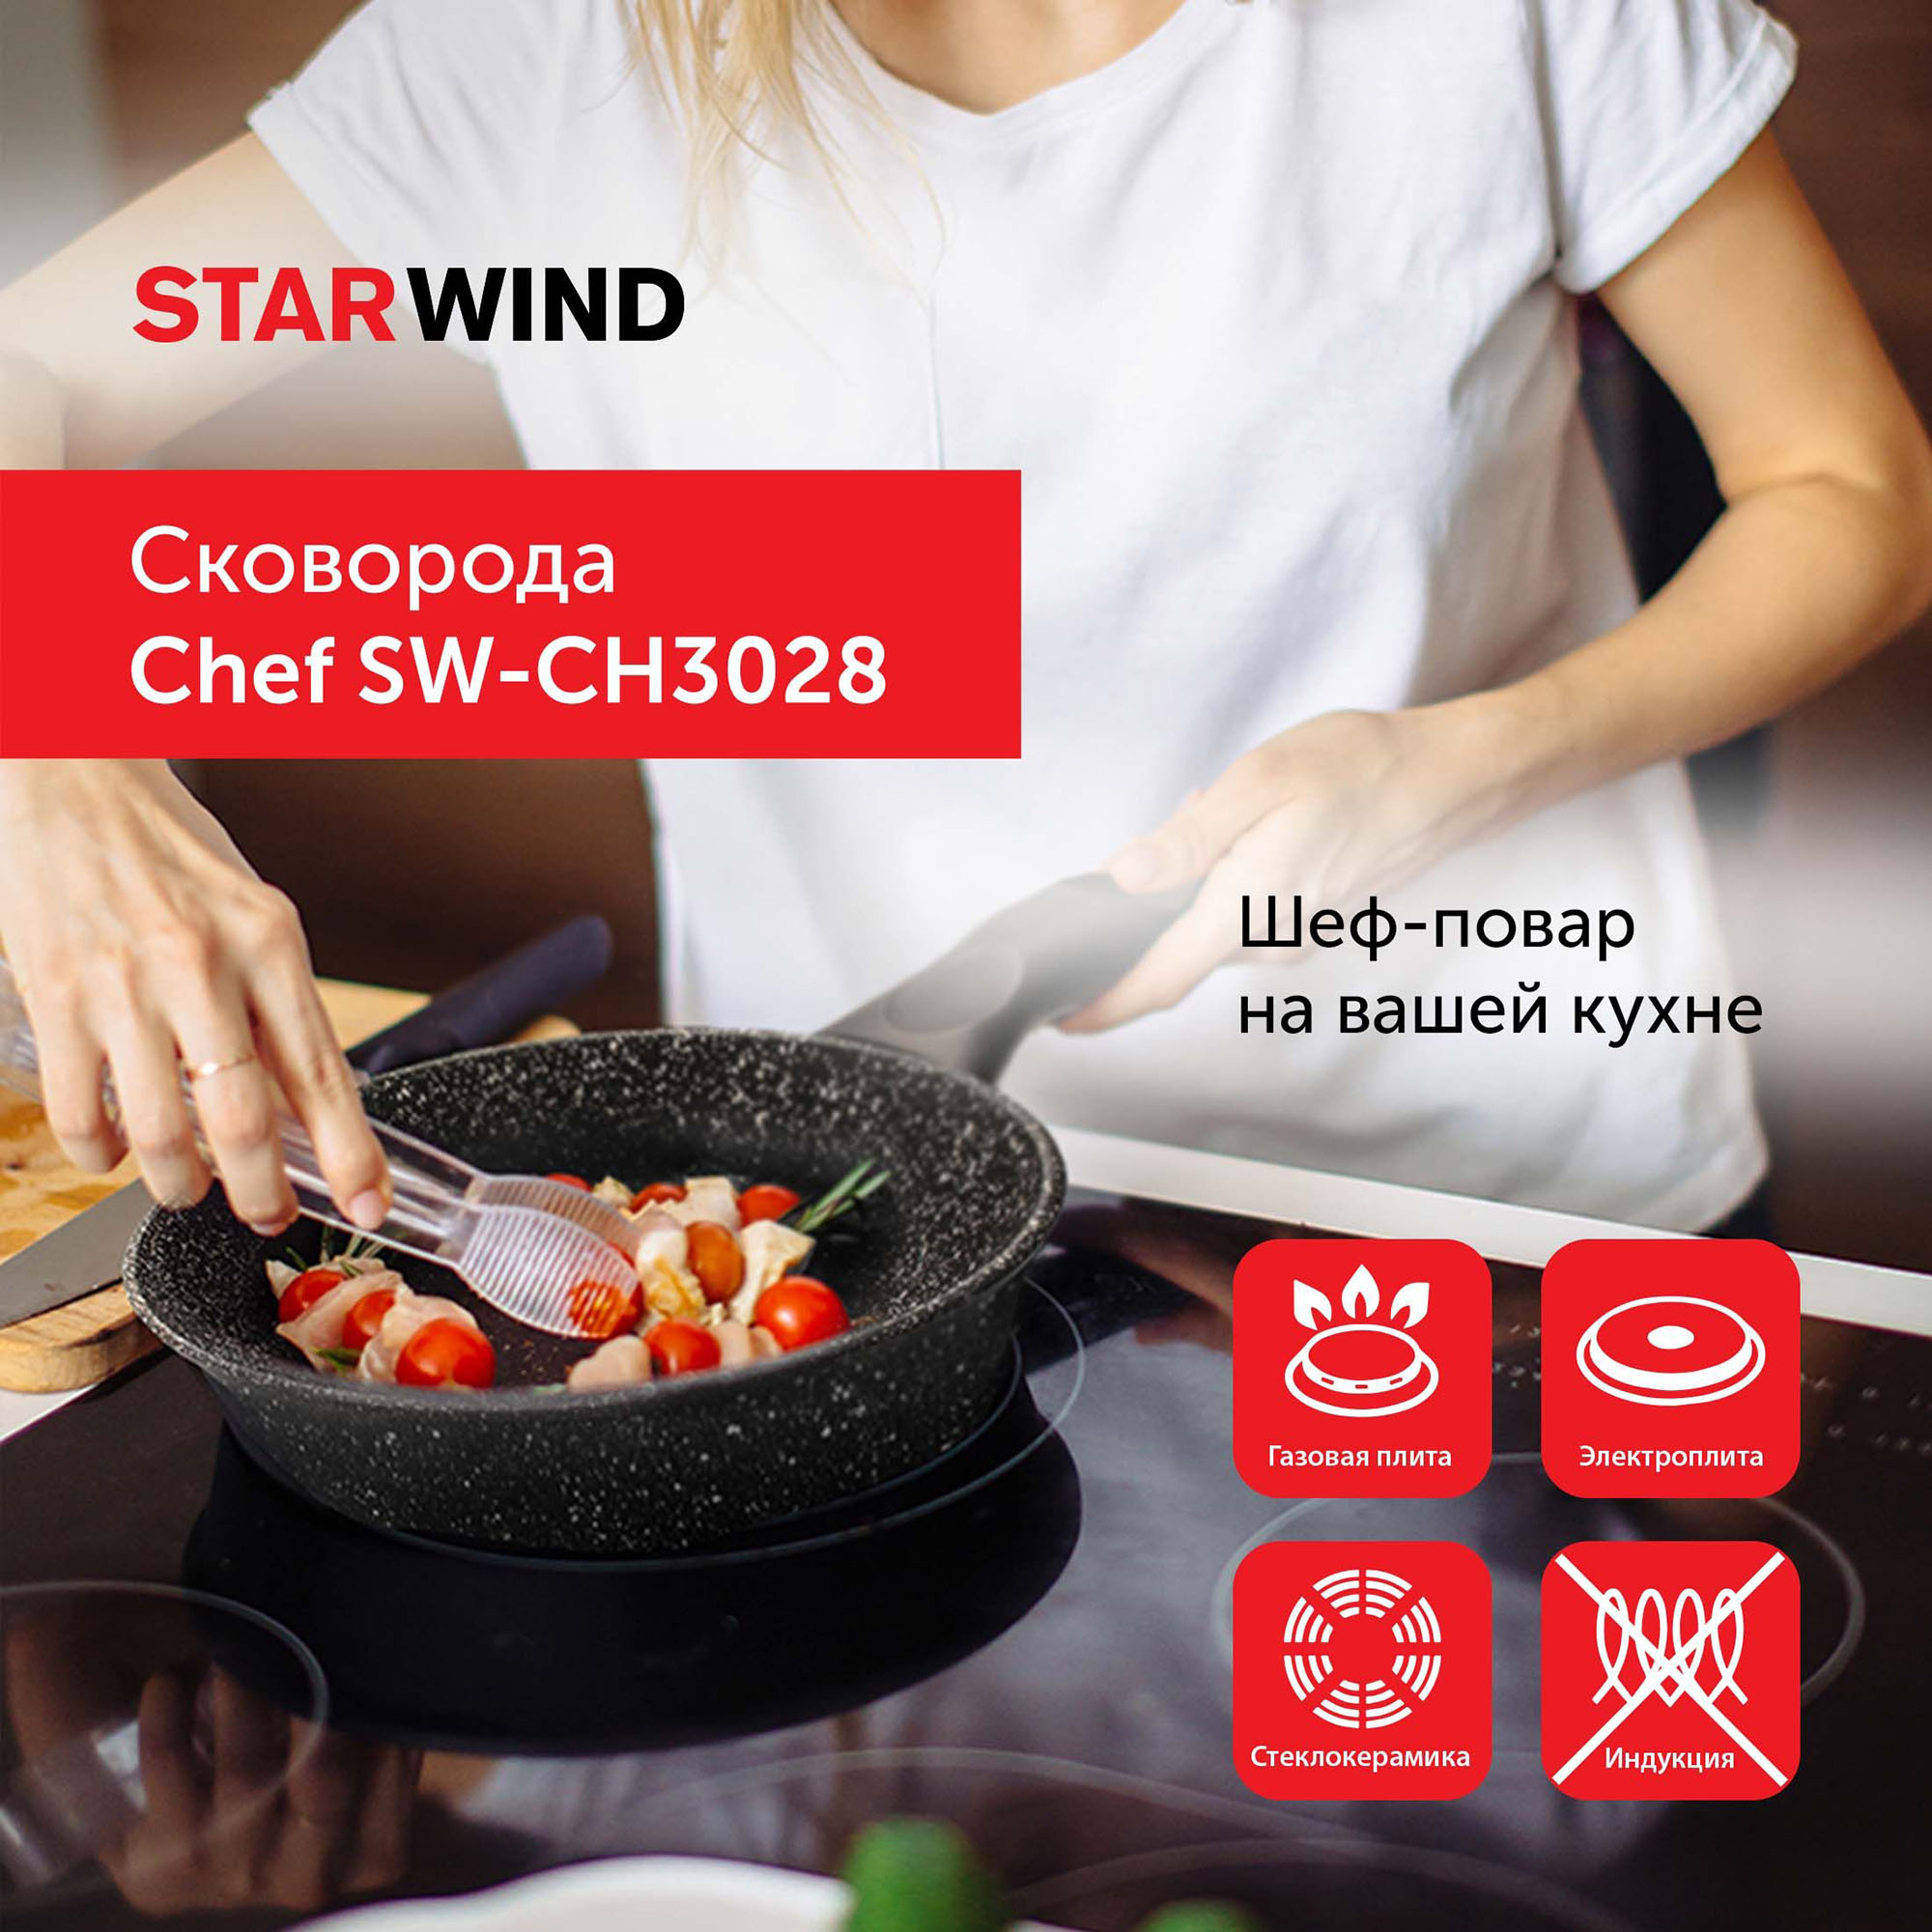 Сковорода Starwind Chef SW-CH3028 круглая 28см покрытие: Quantum2 ручка несъемная (без крышки) черный (SW-CH3028/КОР)